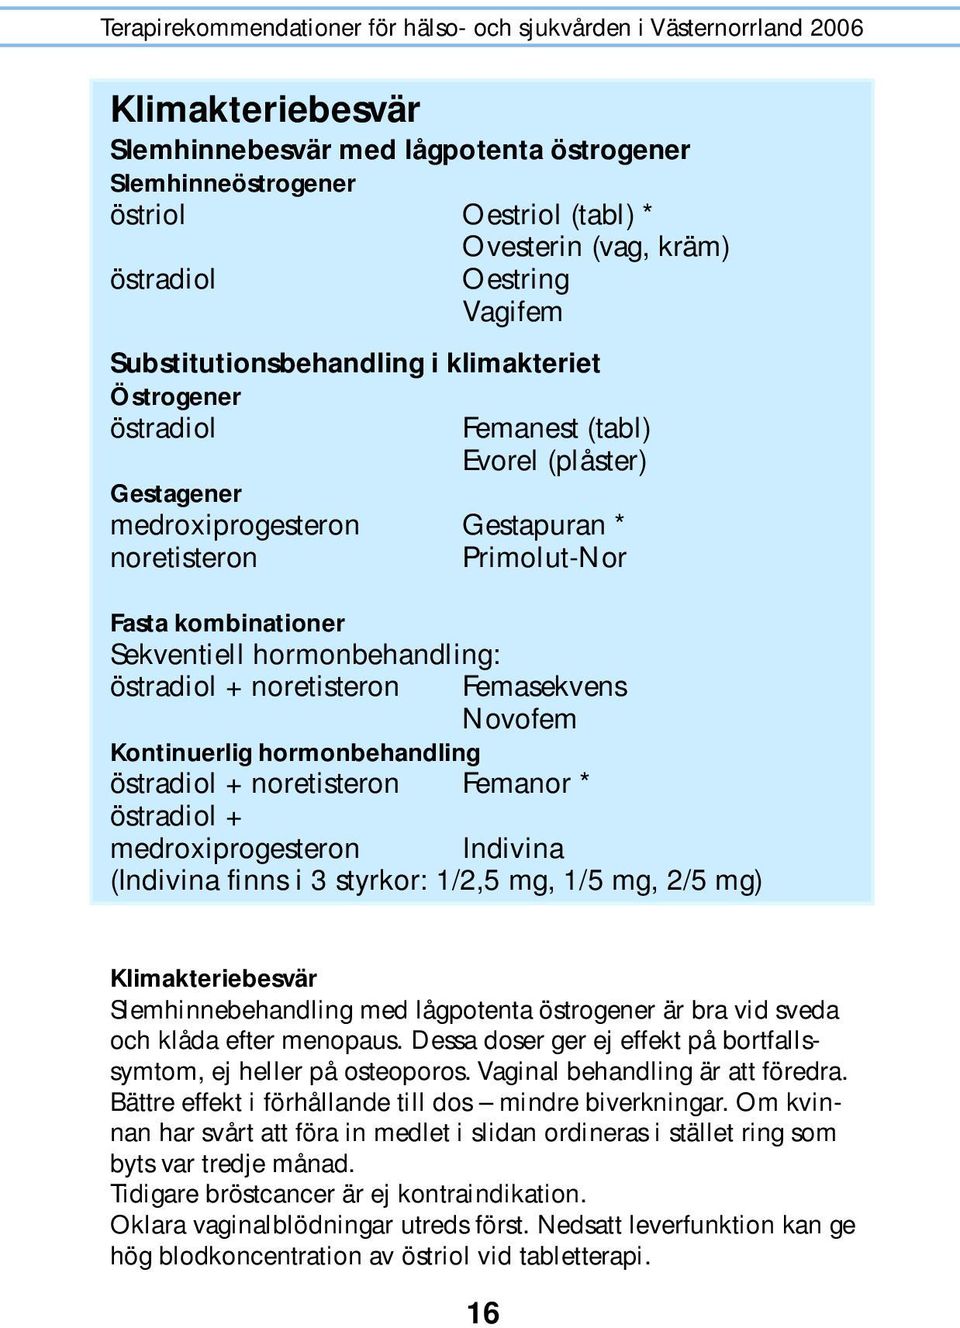 Femasekvens Novofem Kontinuerlig hormonbehandling östradiol + noretisteron Femanor * östradiol + medroxiprogesteron Indivina (Indivina finns i 3 styrkor: 1/2,5 mg, 1/5 mg, 2/5 mg) Klimakteriebesvär